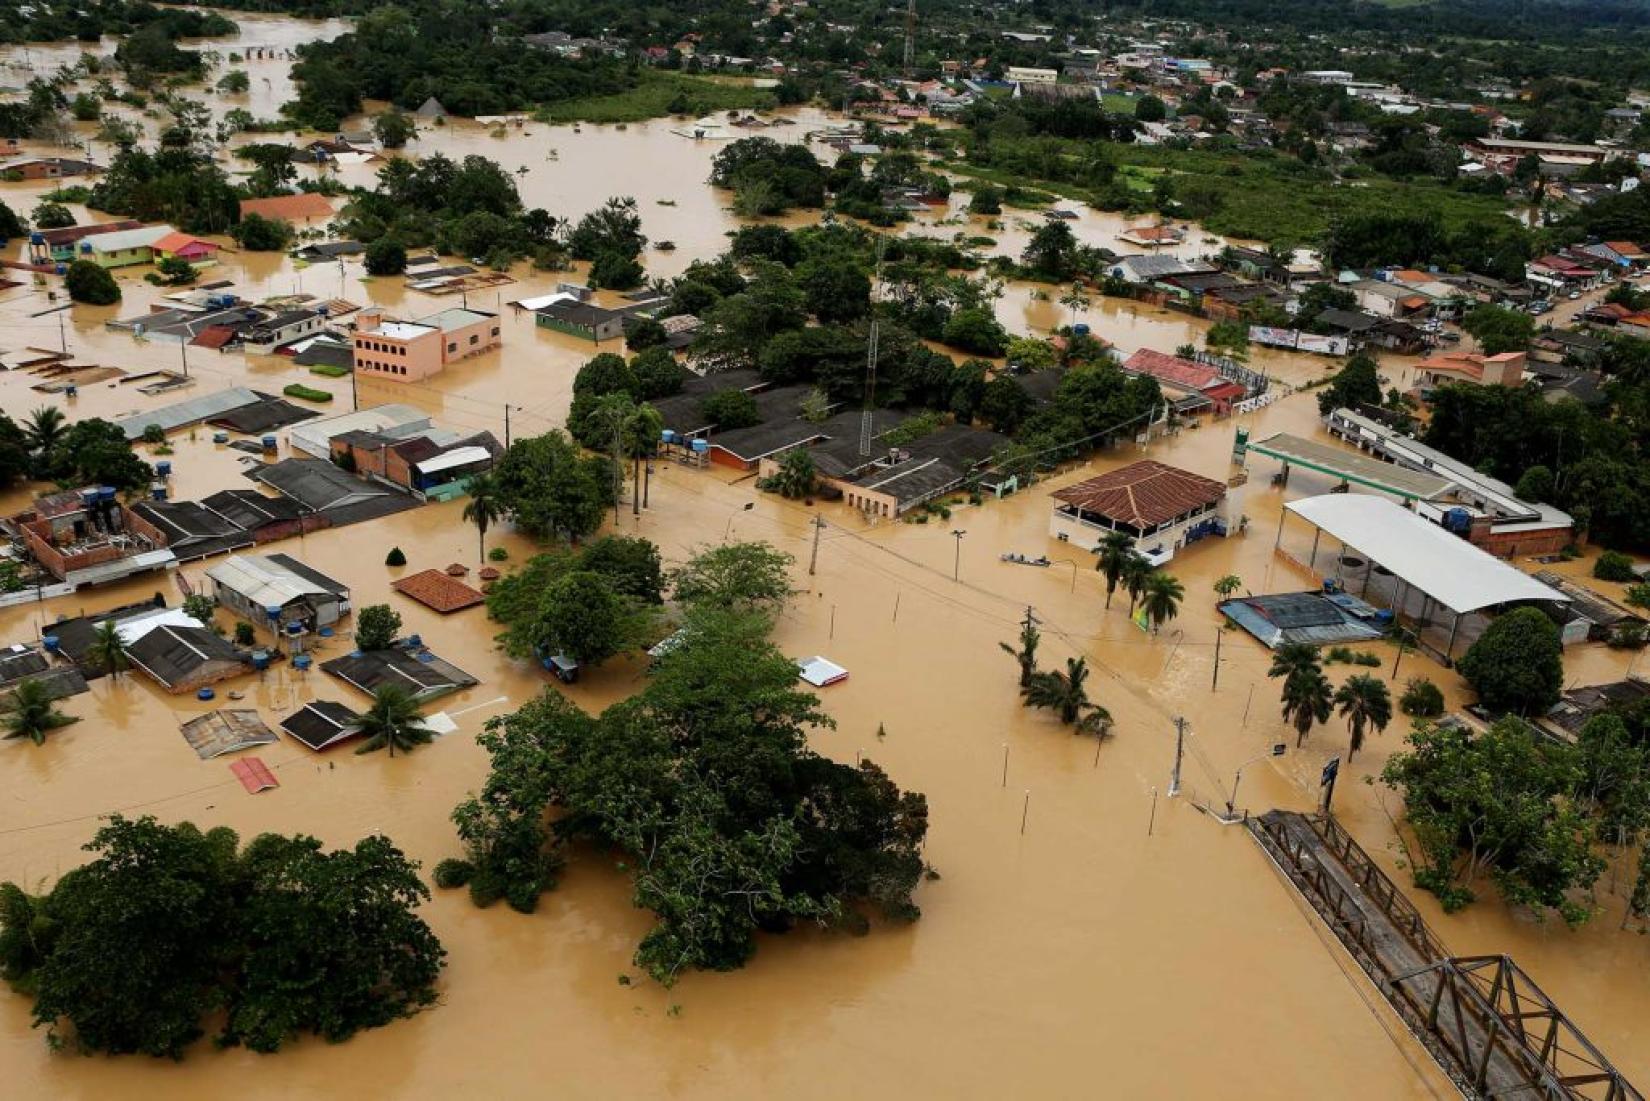 Enchente ocorrida no Acre em 2015. Foto: Agência de Notícias do Acre/Sérgio Vale